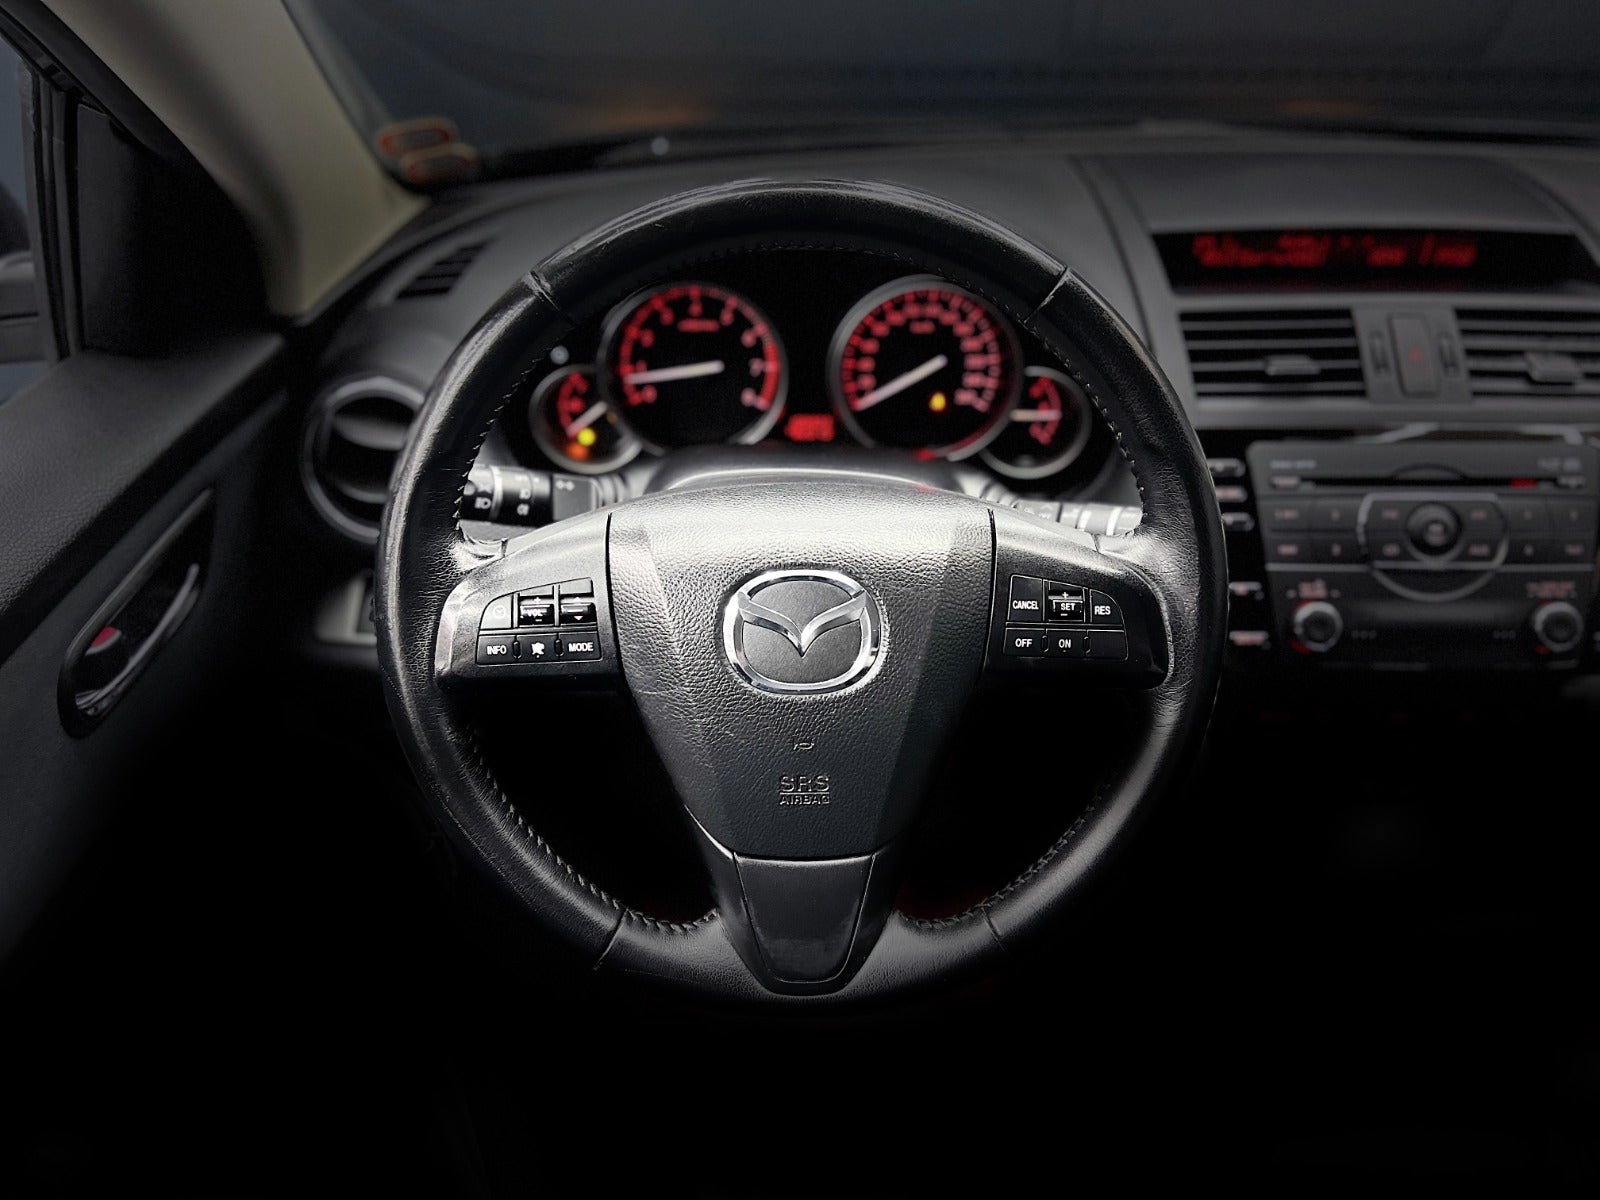 Mazda 6 2010